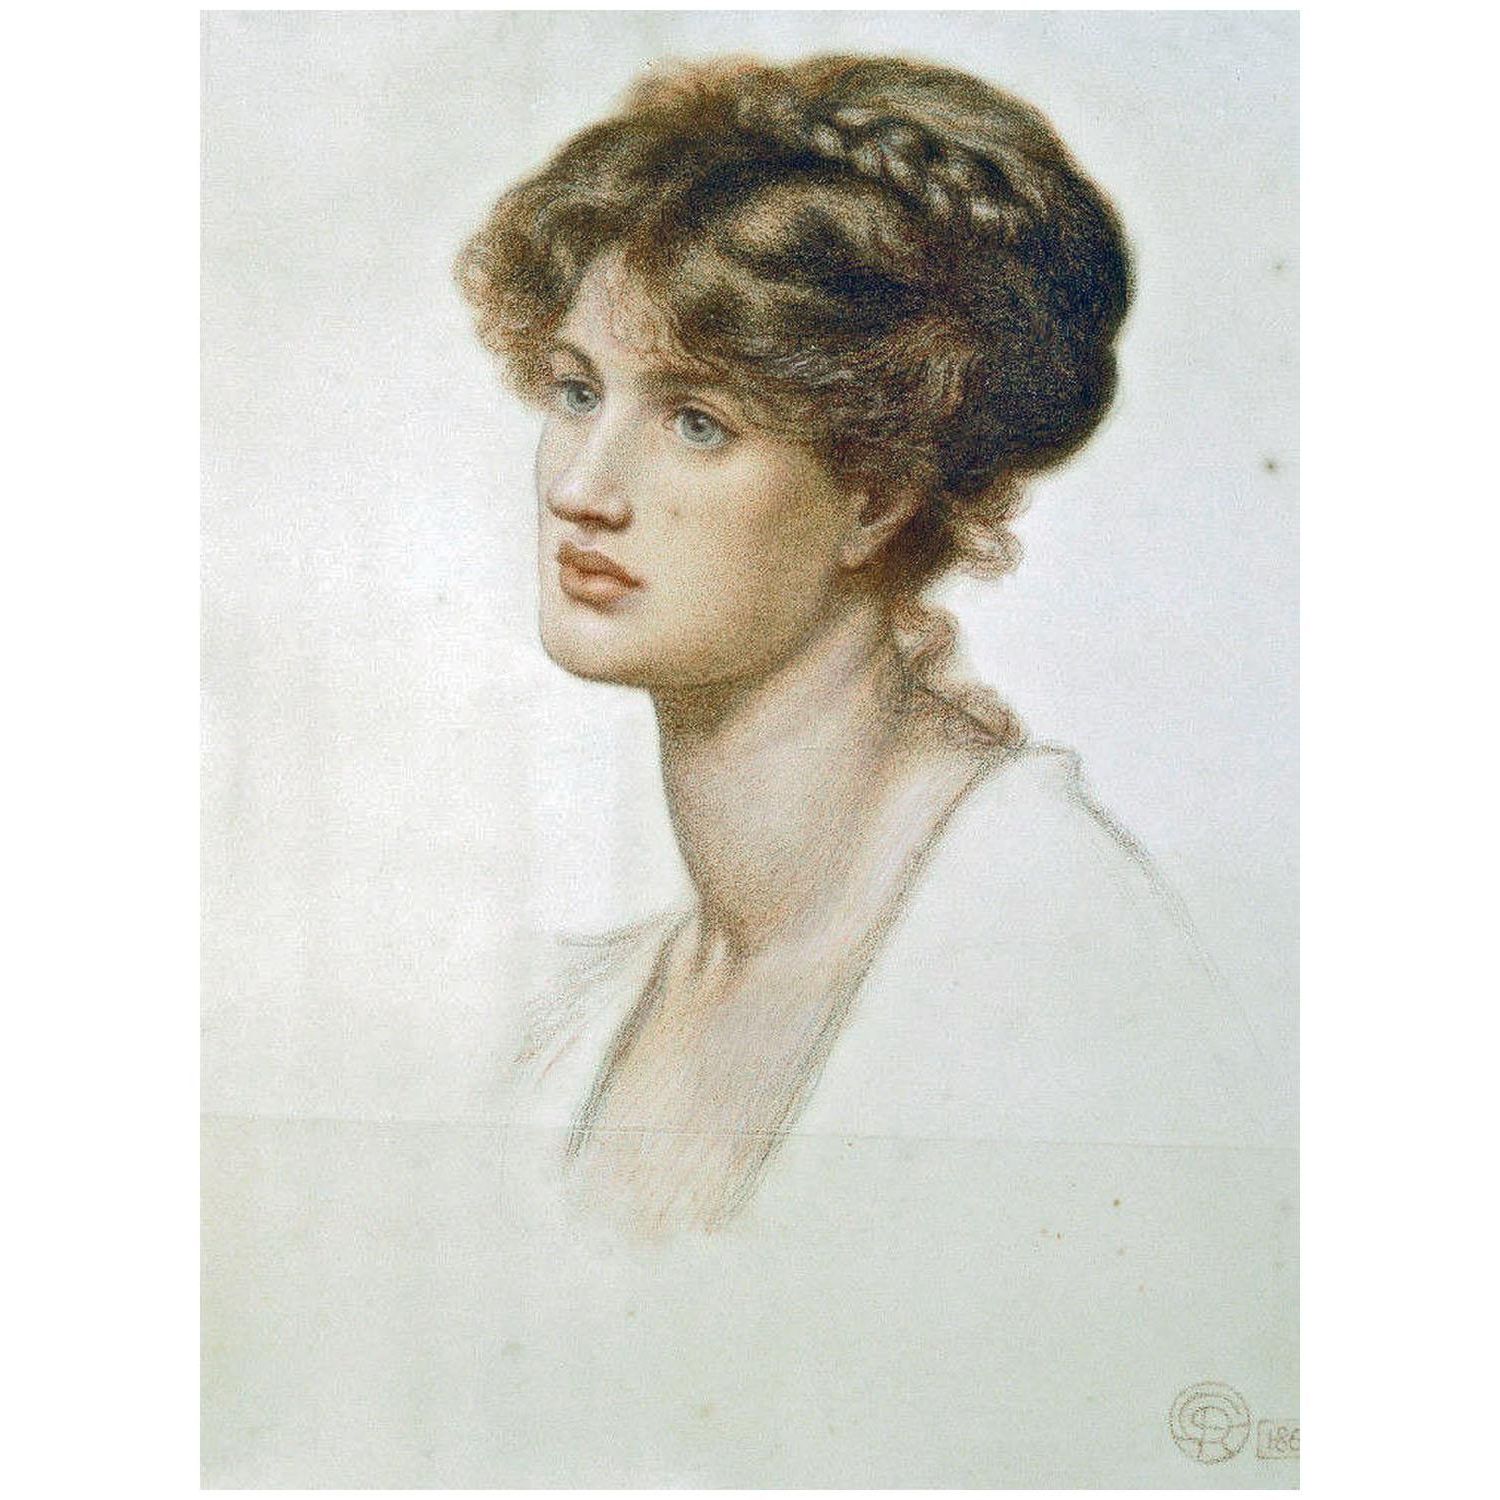 Dante Gabriel Rossetti. Marie Spartali Stillman. 1869. Private collection